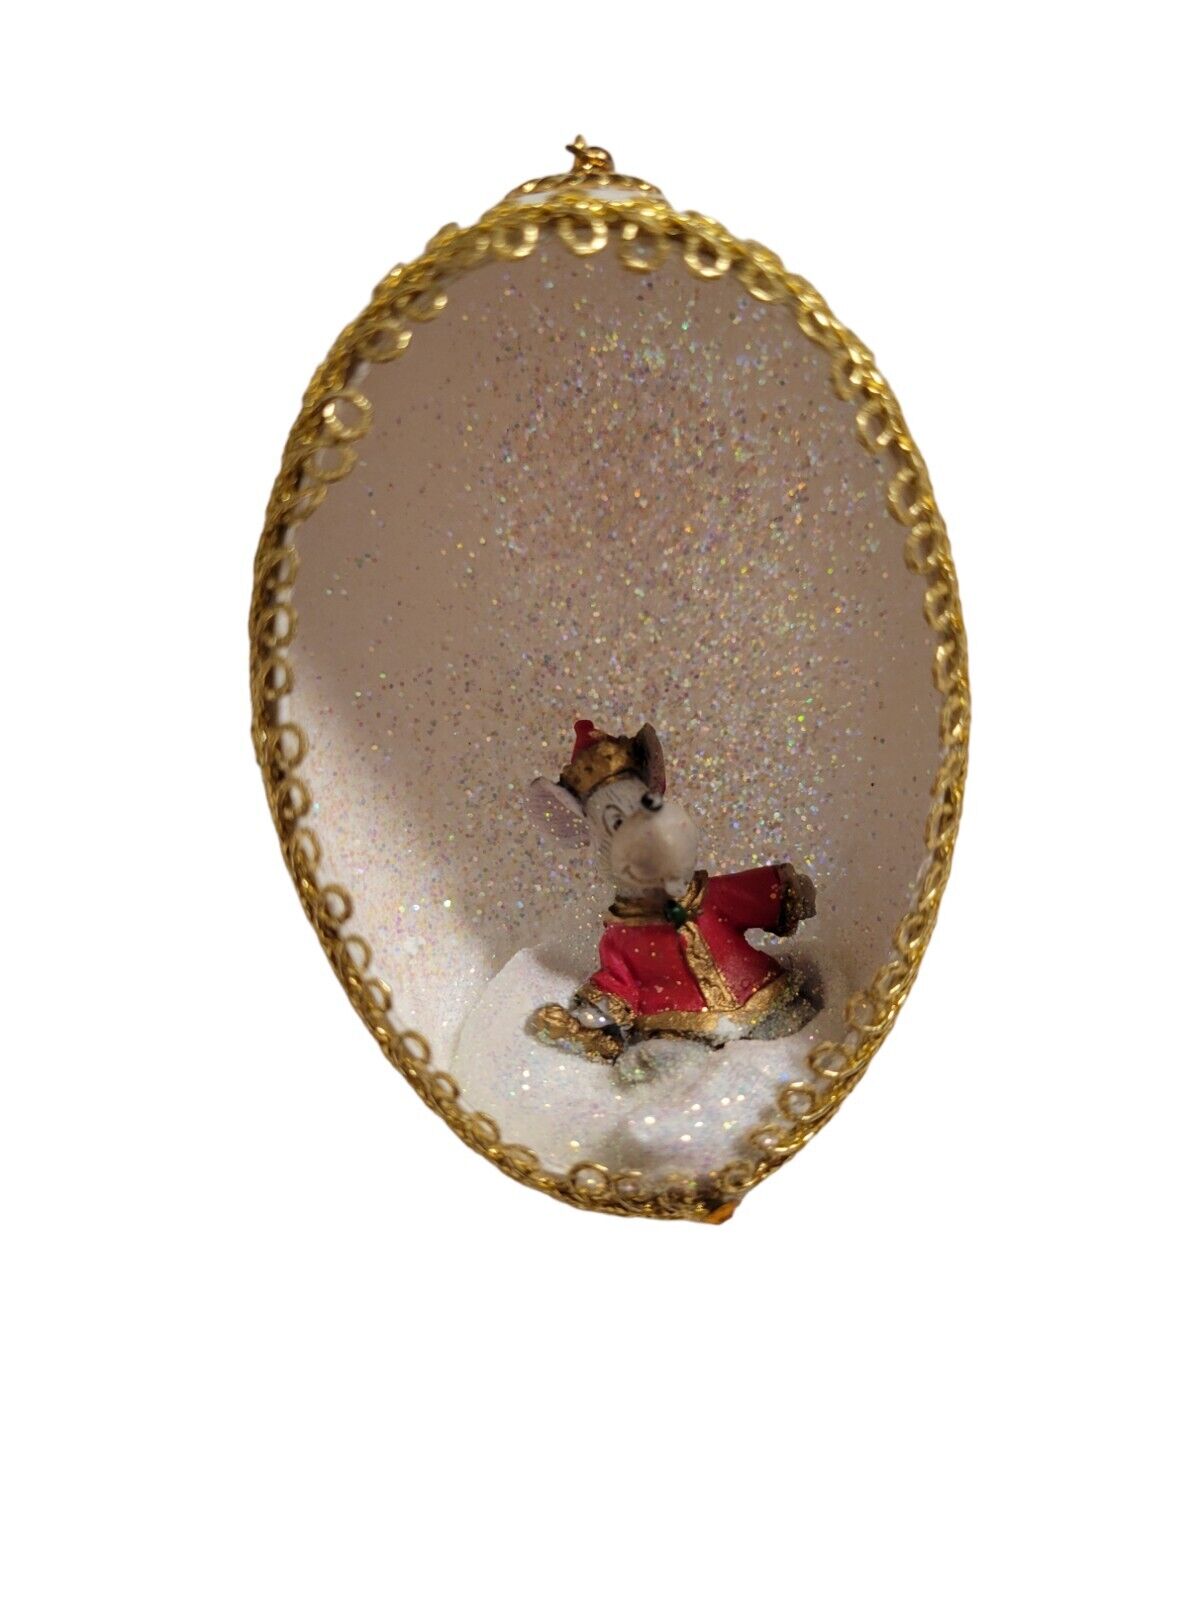 Vintage Handmade Mouse Holiday Christmas Diorama Egg Ornament